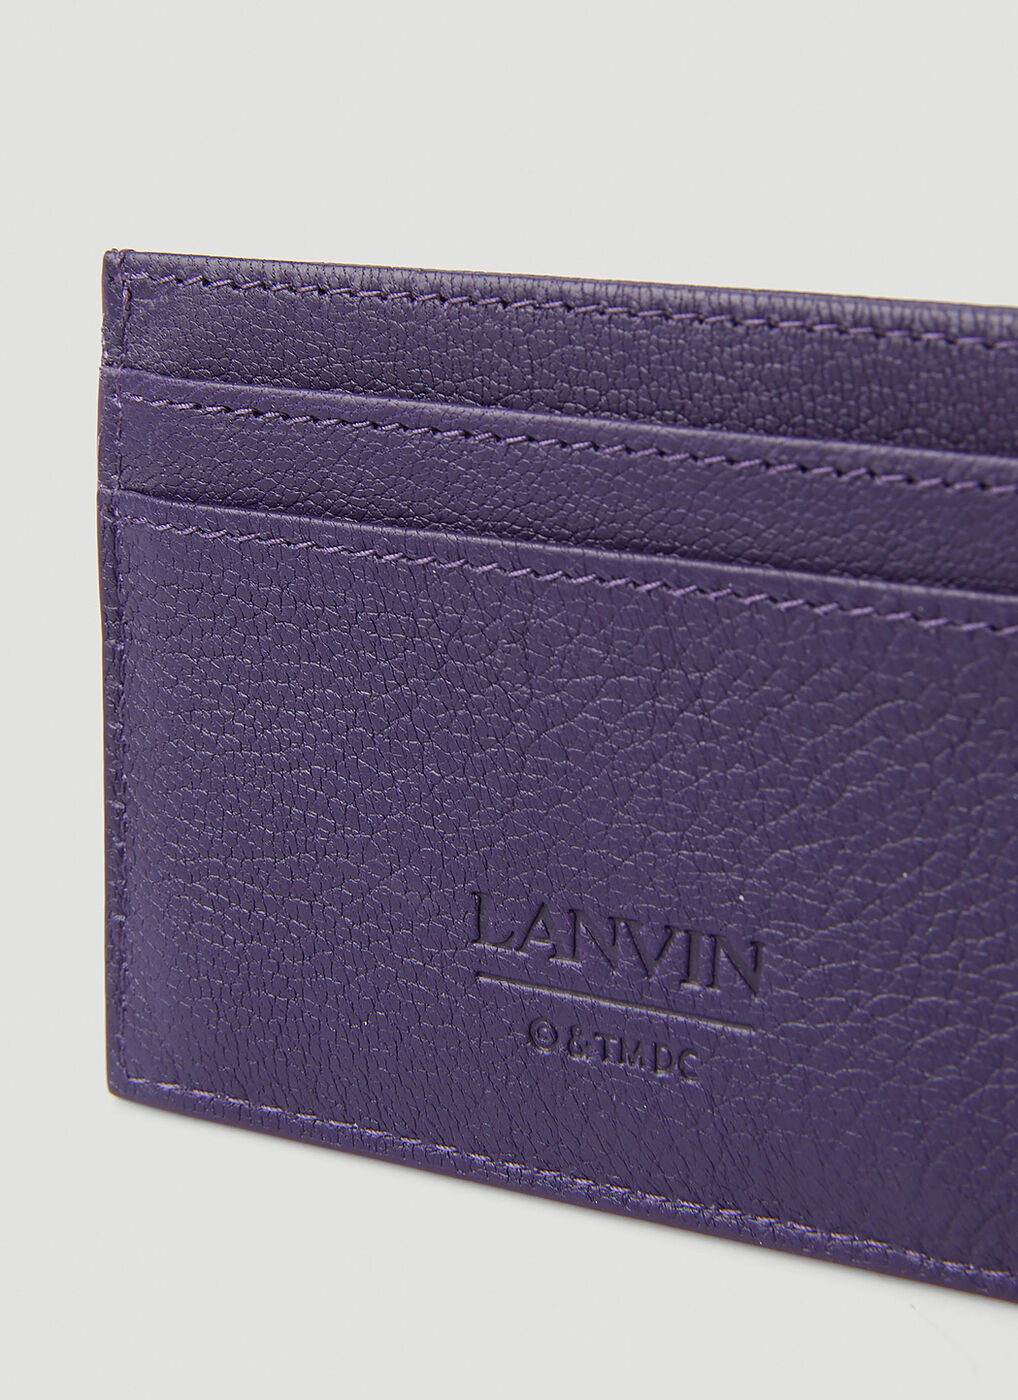 Batman Card Holder in Purple Lanvin